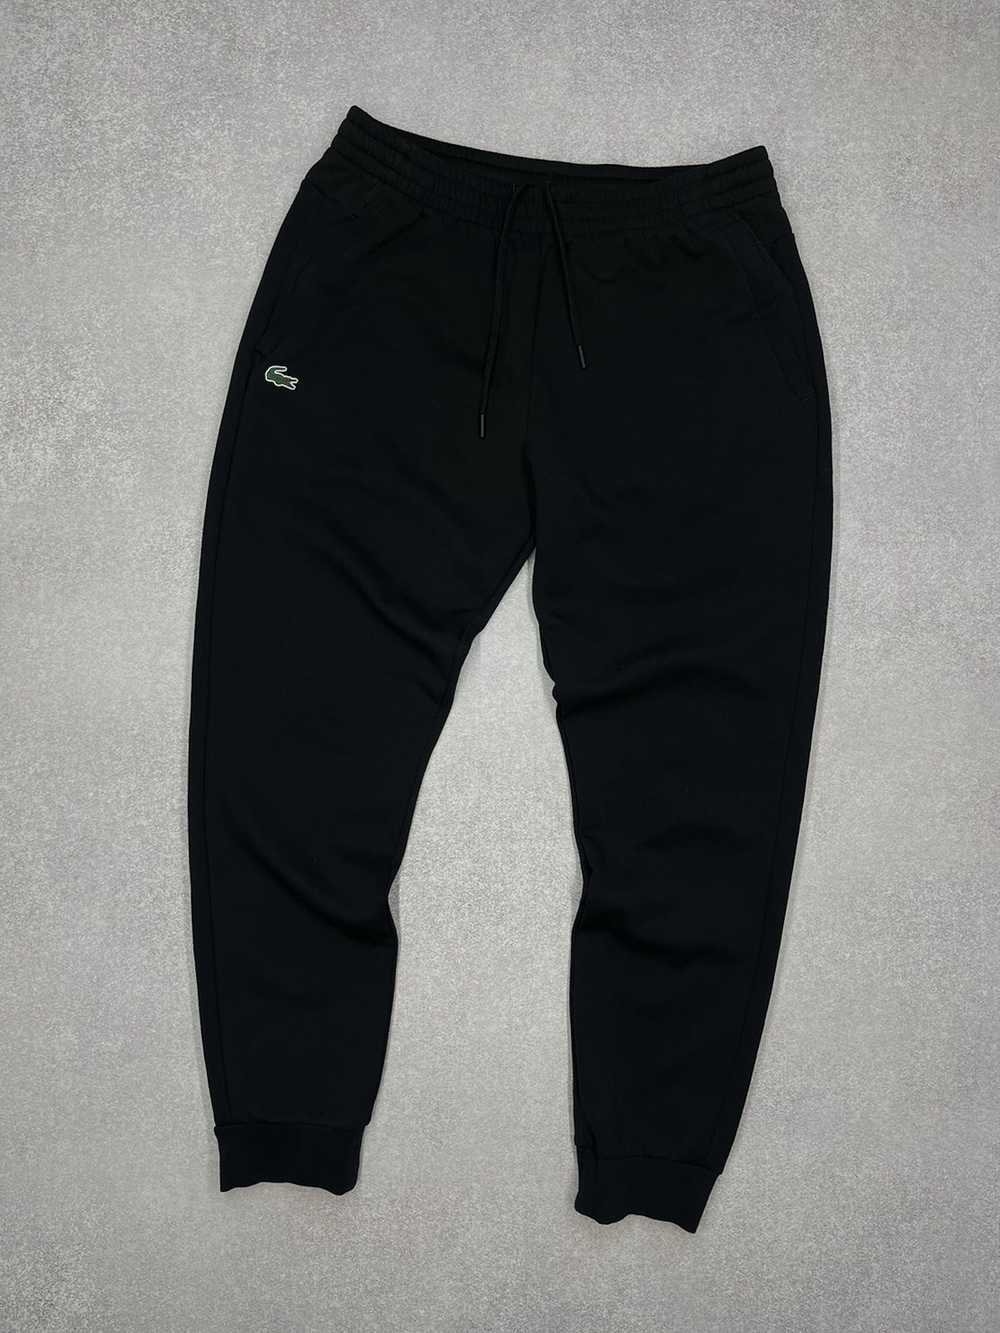 Lacoste × Streetwear Mens Lacoste Sport Black Swe… - image 1